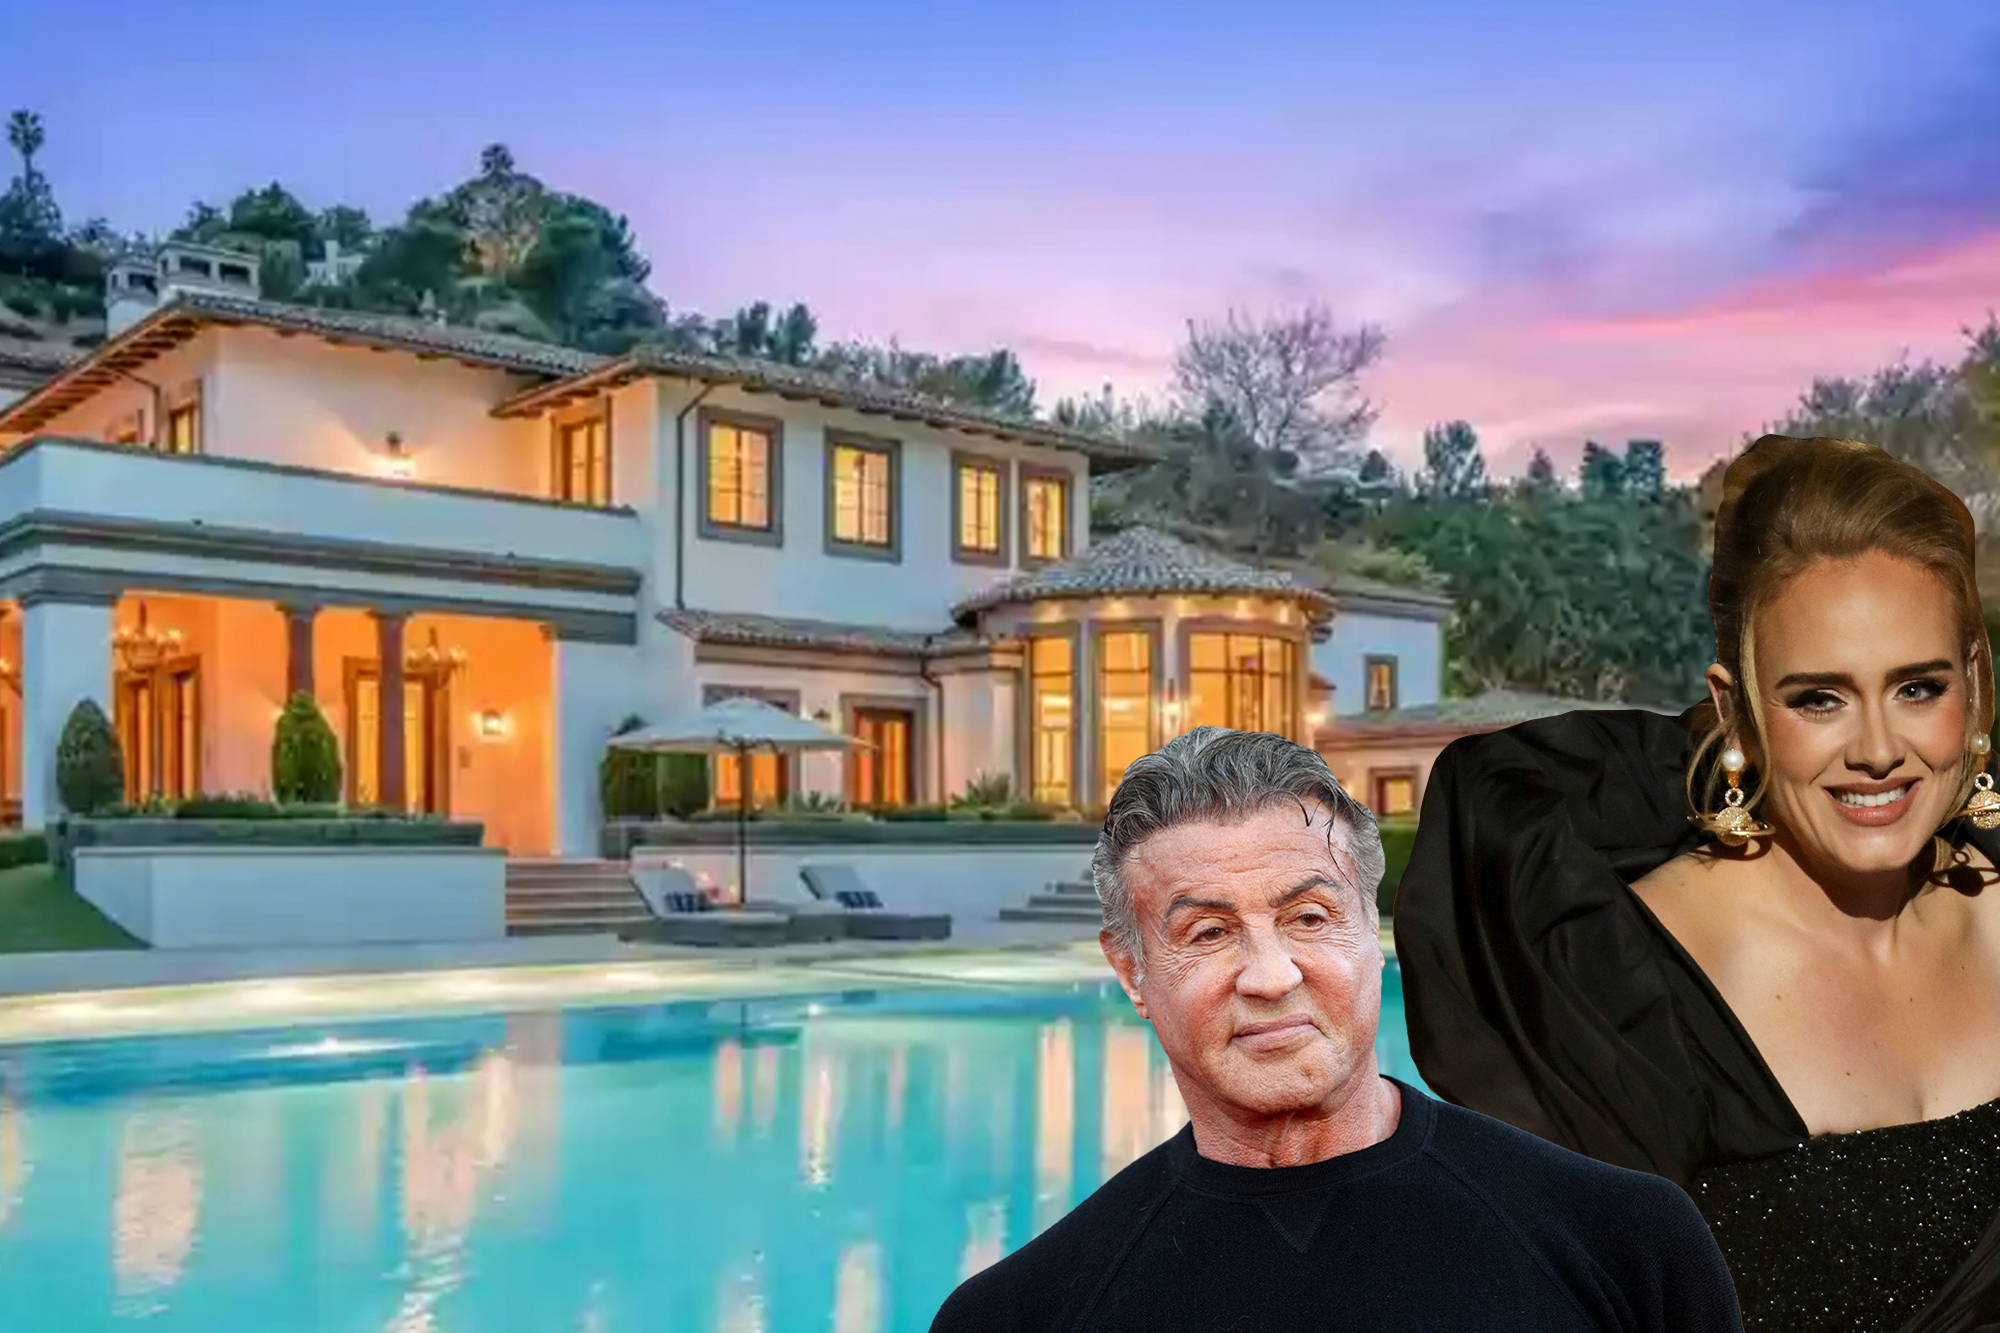 Adele compra mansão de Stallone por R$ 323 milhões – Vírgula